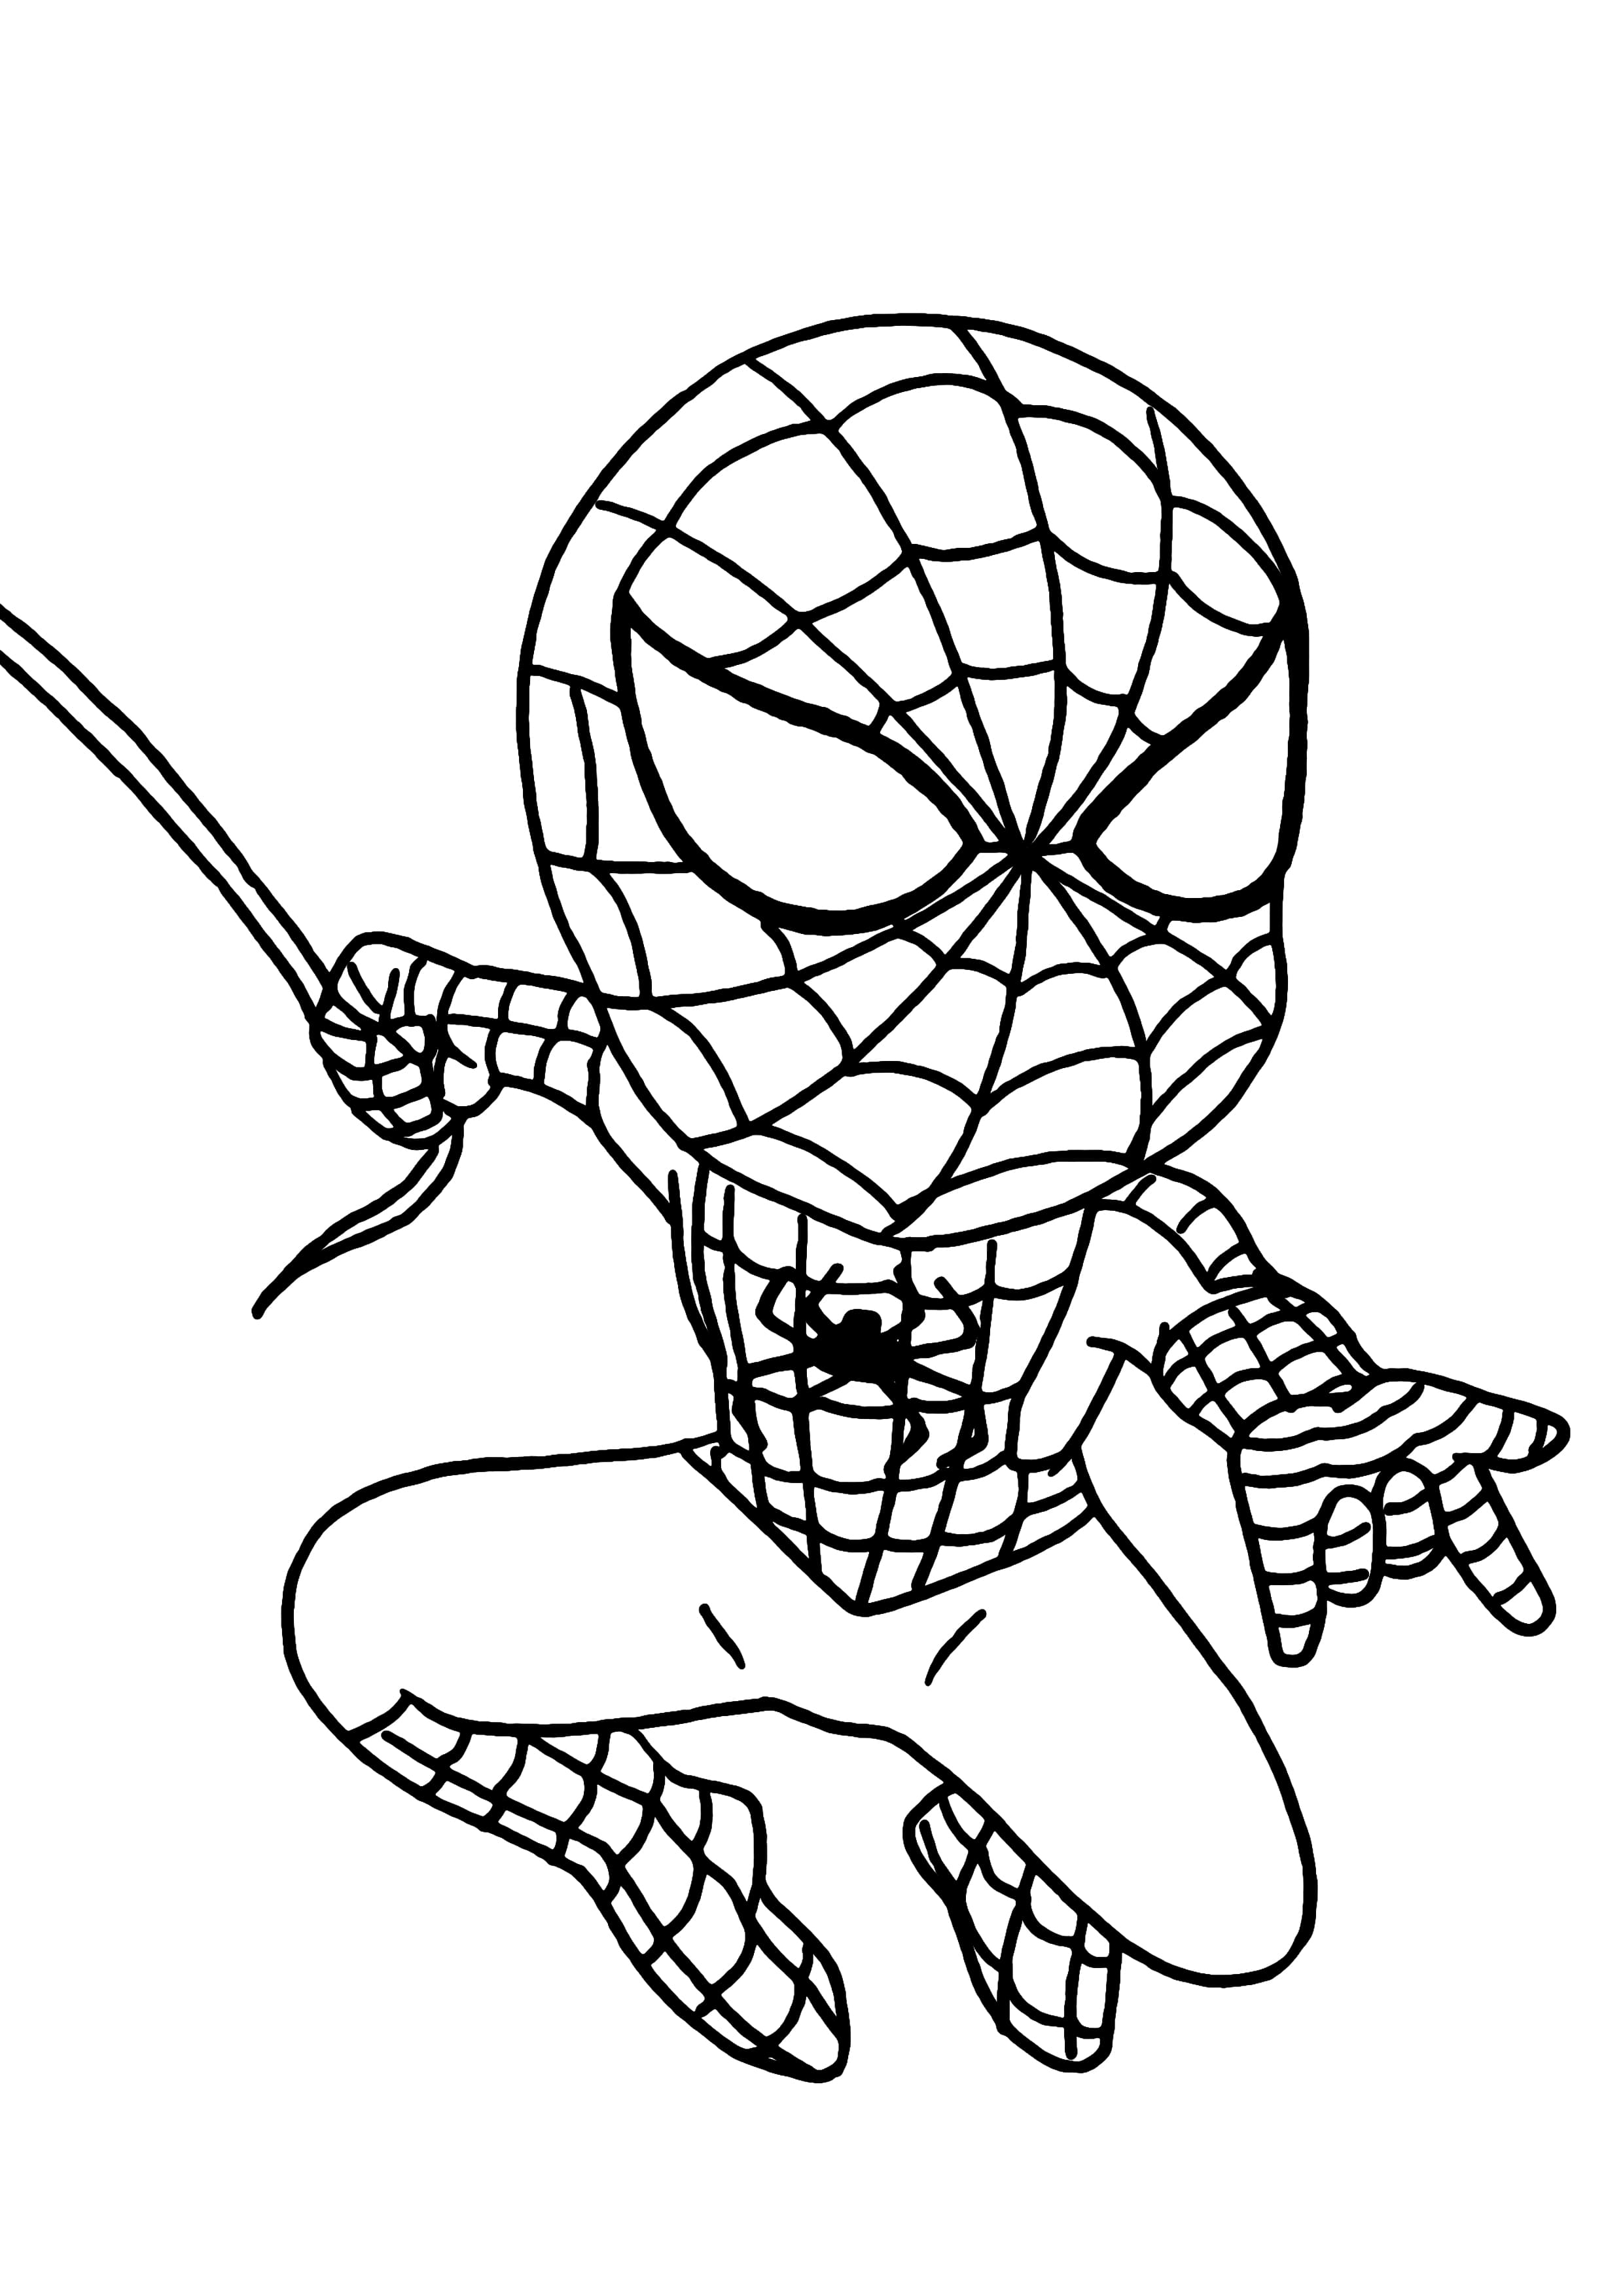 Coloriage Spiderman Imprimer En Ligne Un Super Heros 90 Images